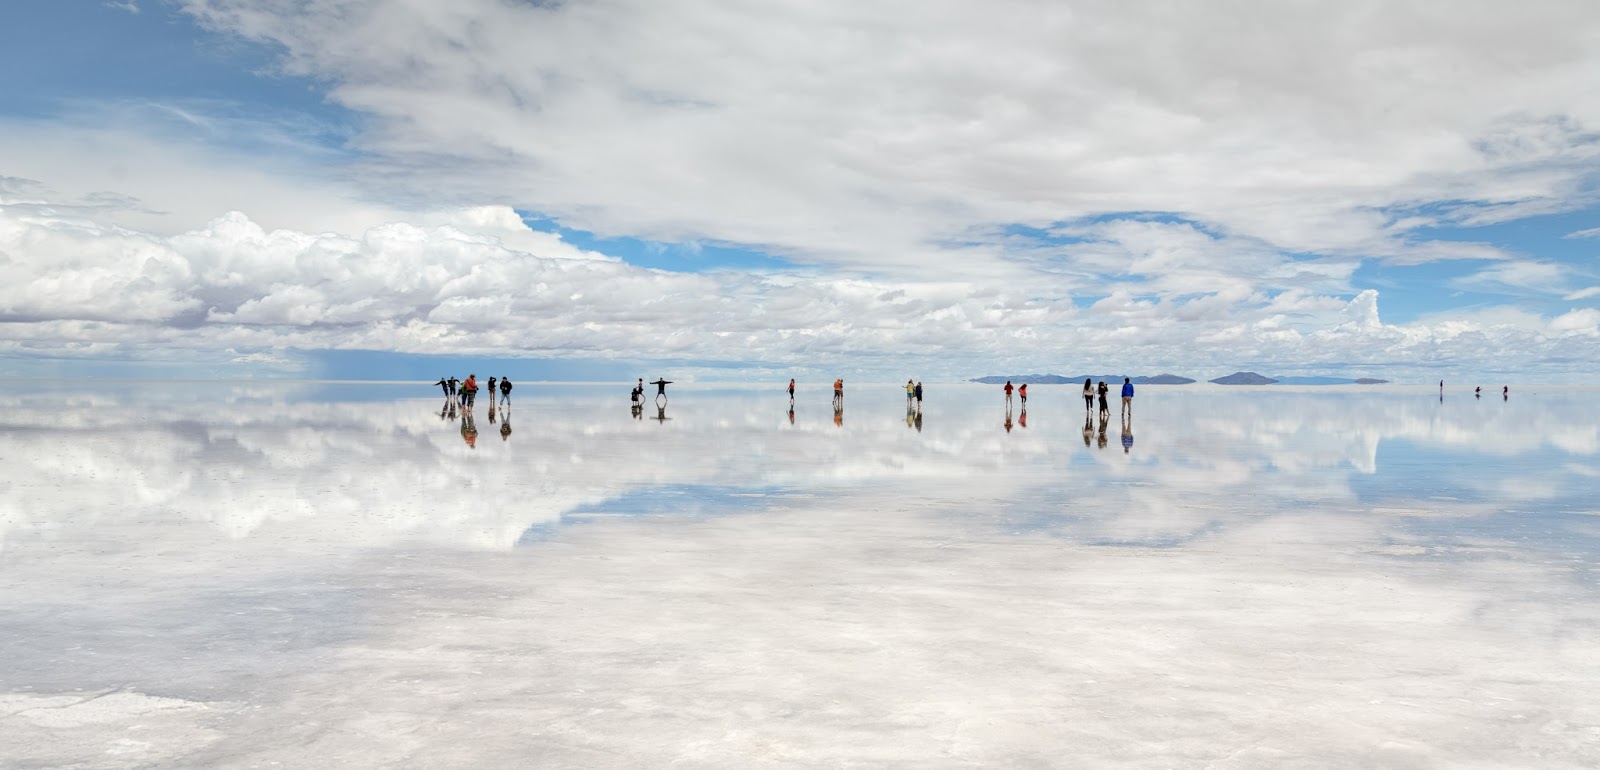 Salar de Uyuni, Andes in southwest Bolivia